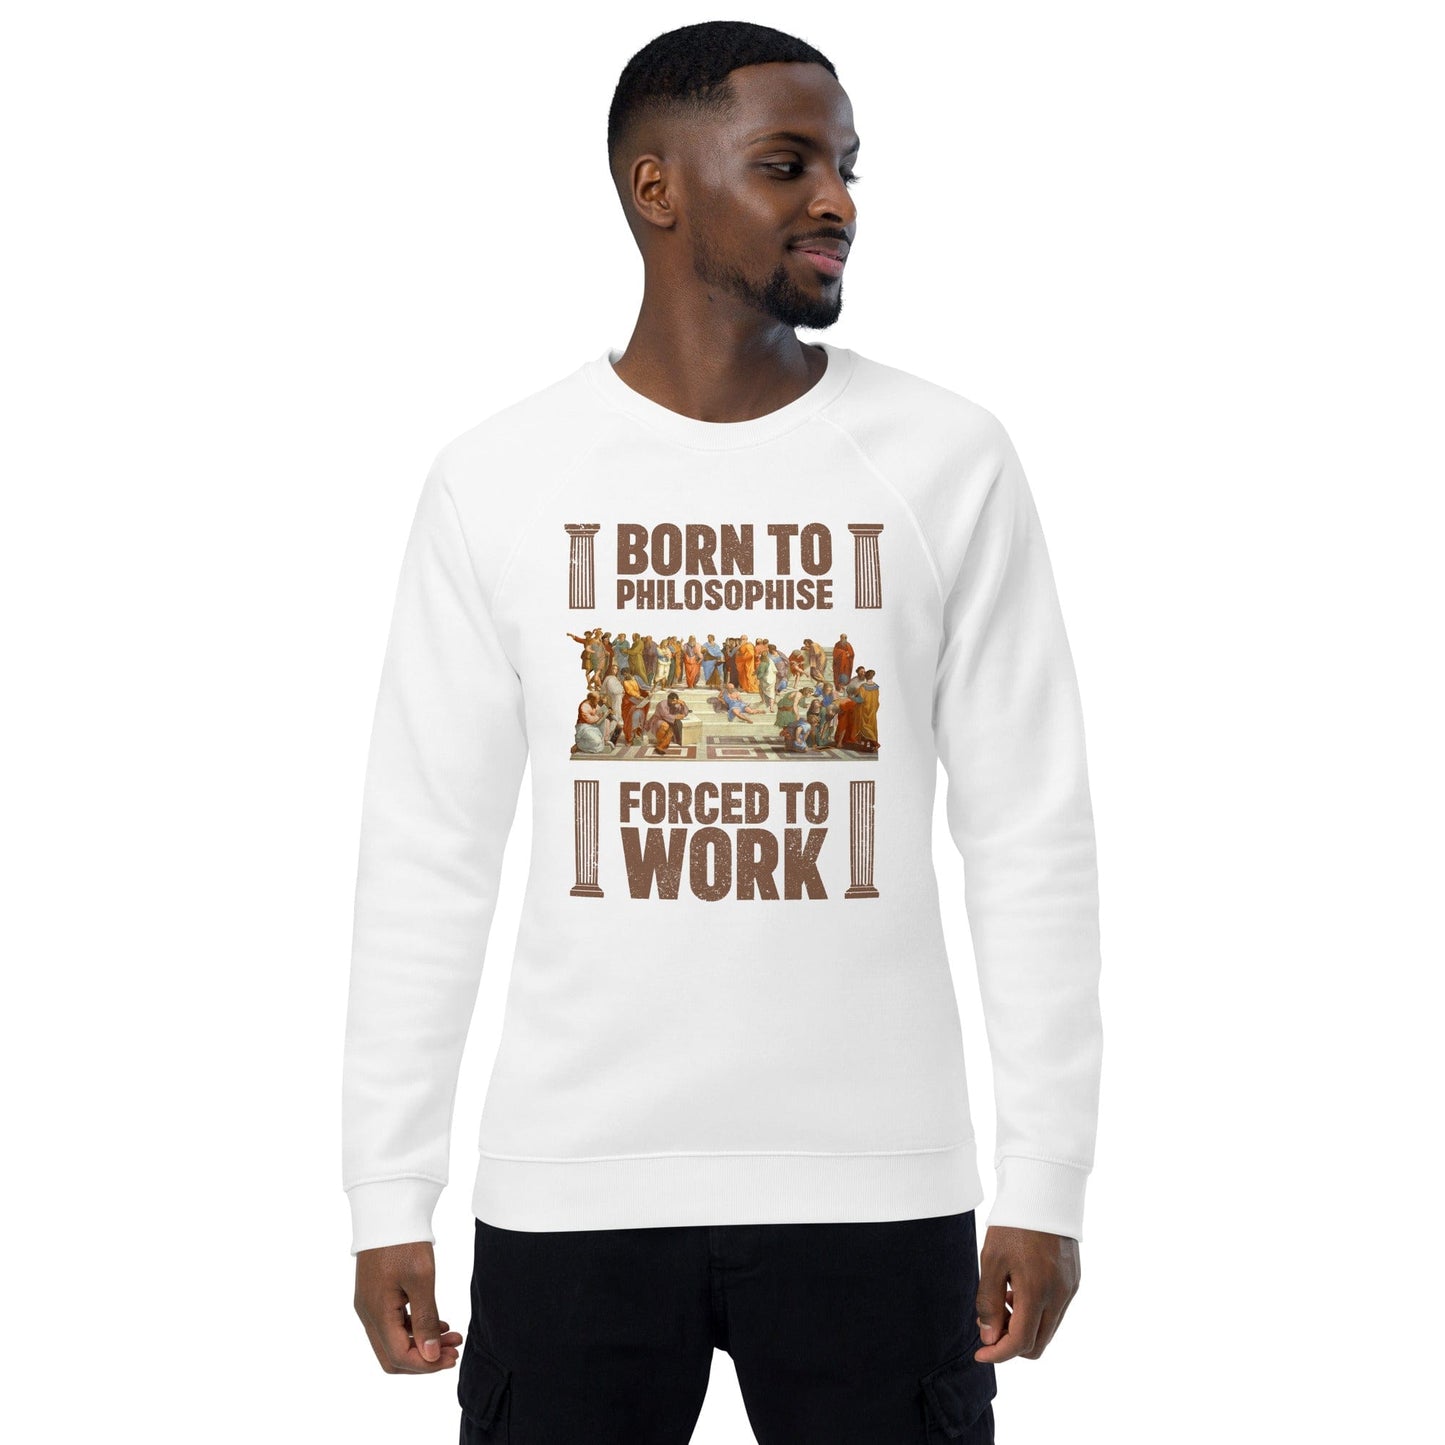 Born To Philosophise - Forced To Work (UK) - Eco Sweatshirt